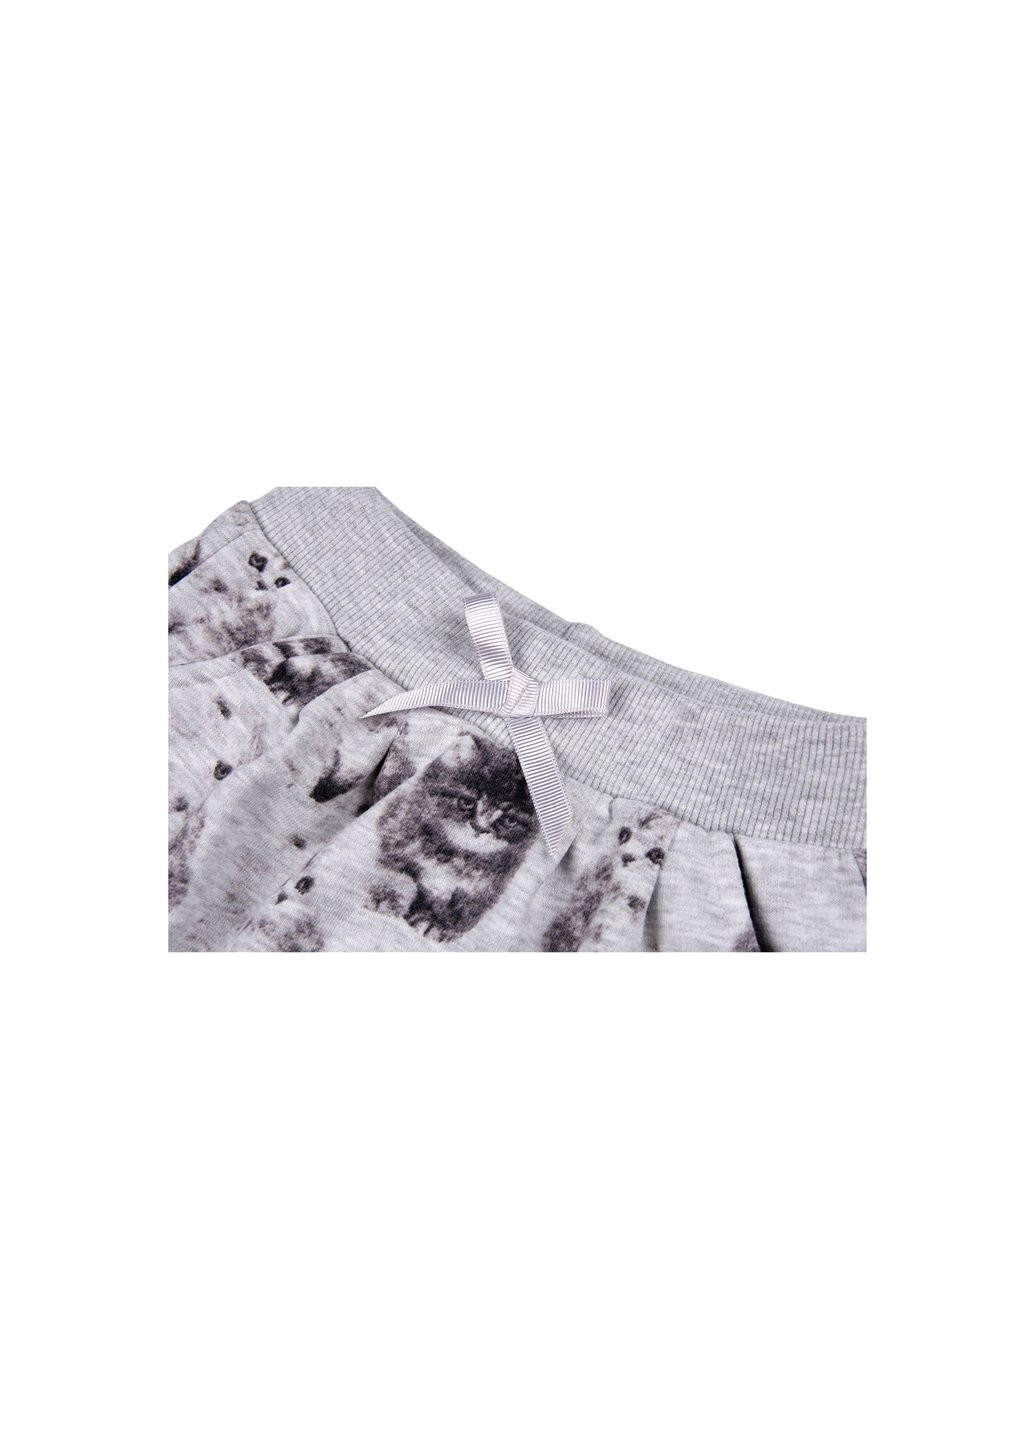 Серый демисезонный набор детской одежды кофта и брюки серый меланж (7874-86g-gray) Breeze